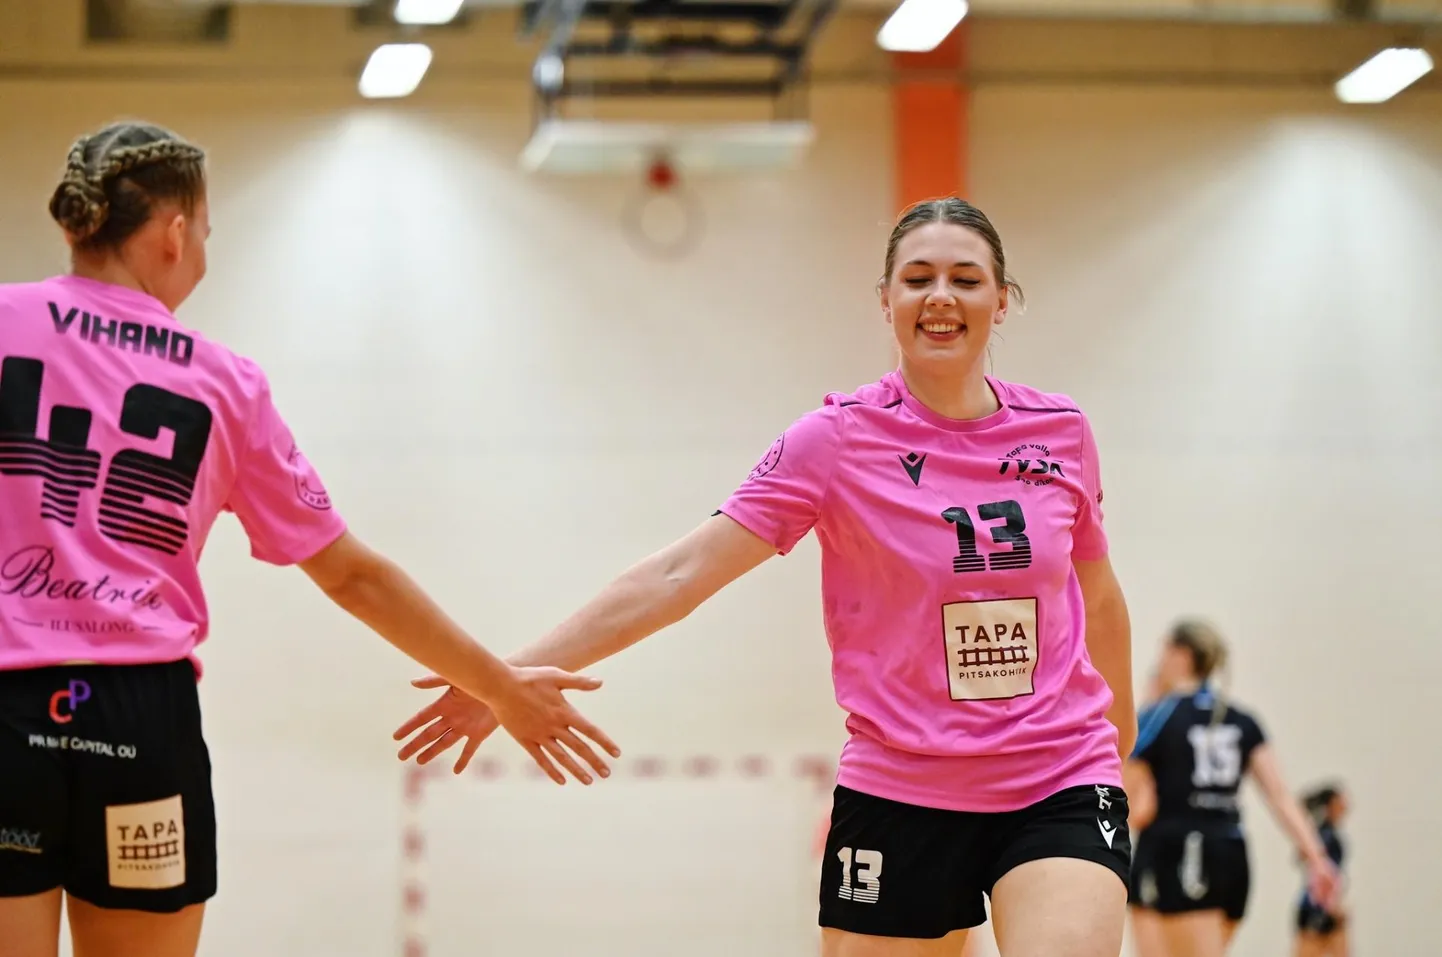 SK Tapa mängijad Marjette Maie Müntser (paremal) ja Janette Vihand rõõmustamas järjekordse eduka soorituse üle.